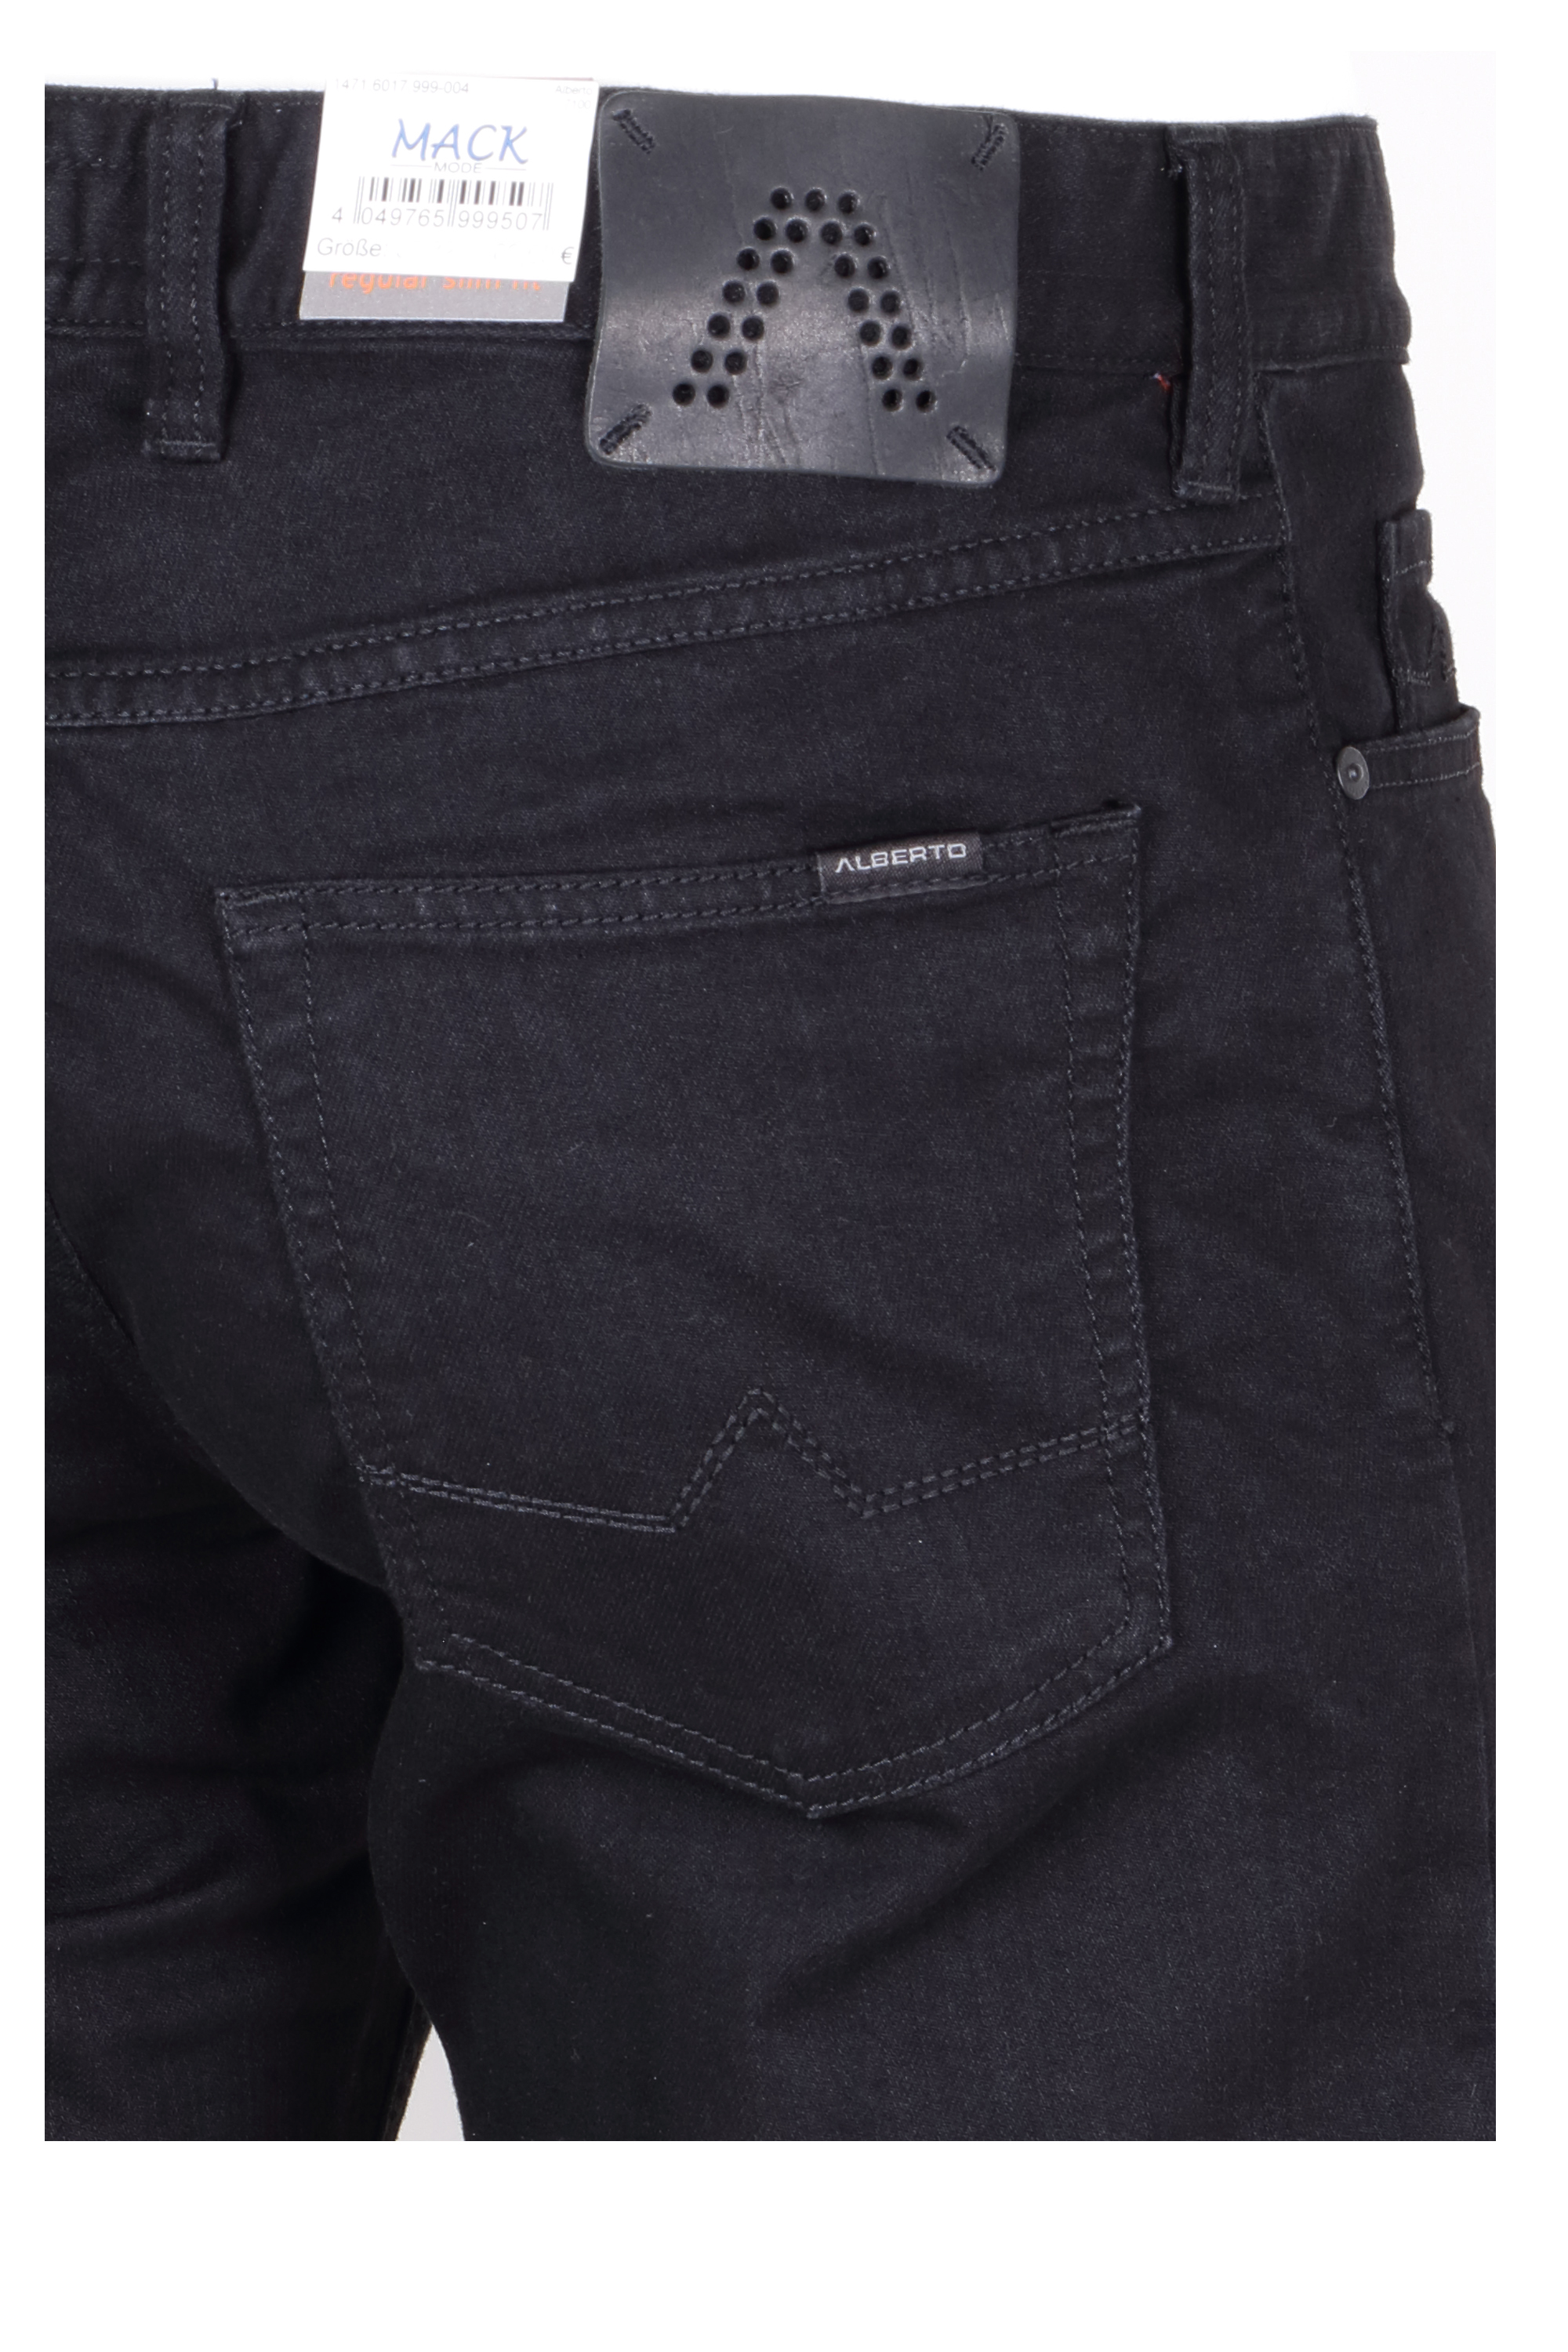 Alberto Herren Jeans Pipe regular fit - schwarz 40/30